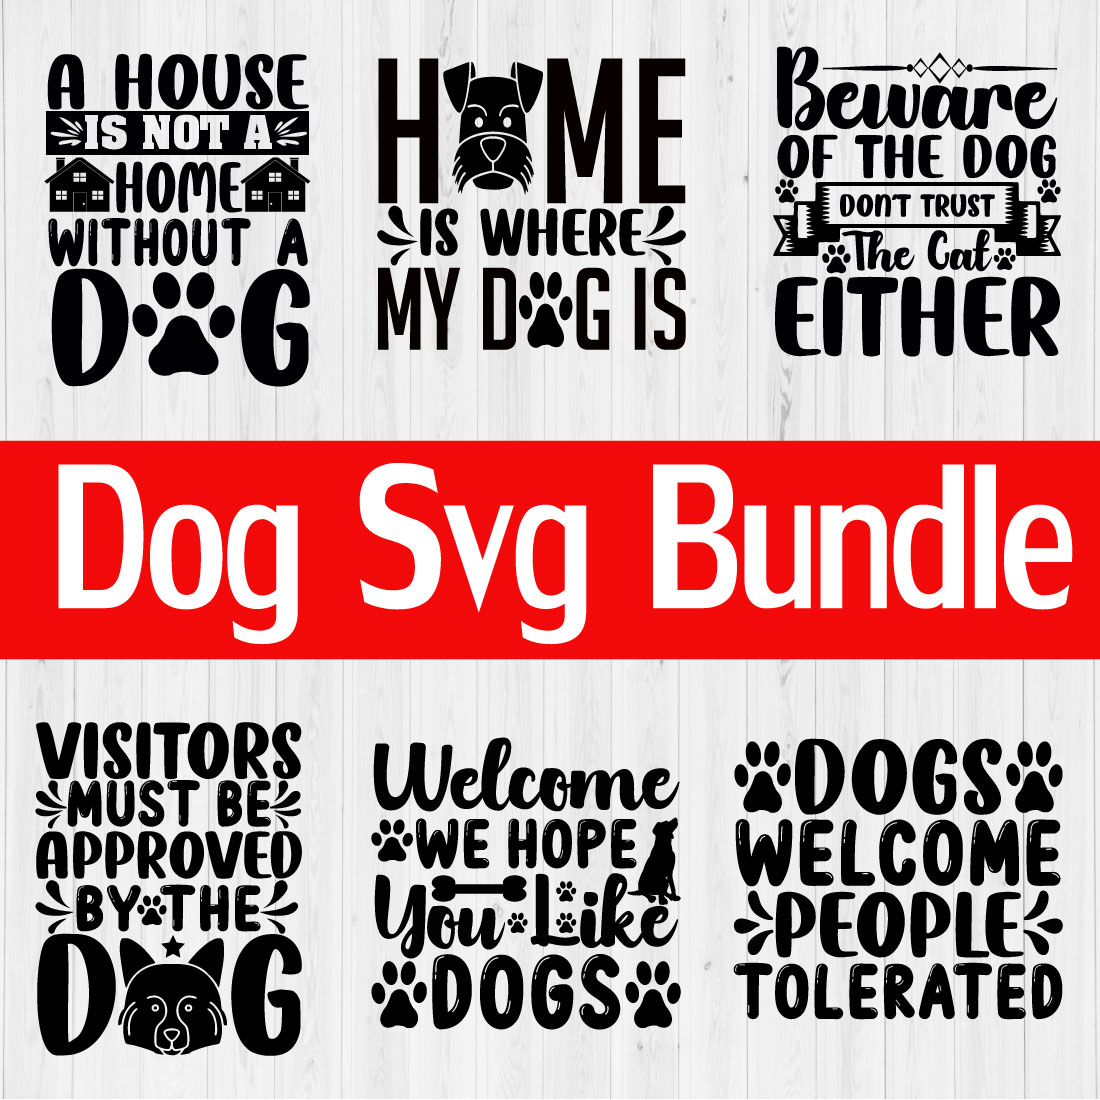 Dog Design Bundle Vol23 cover image.